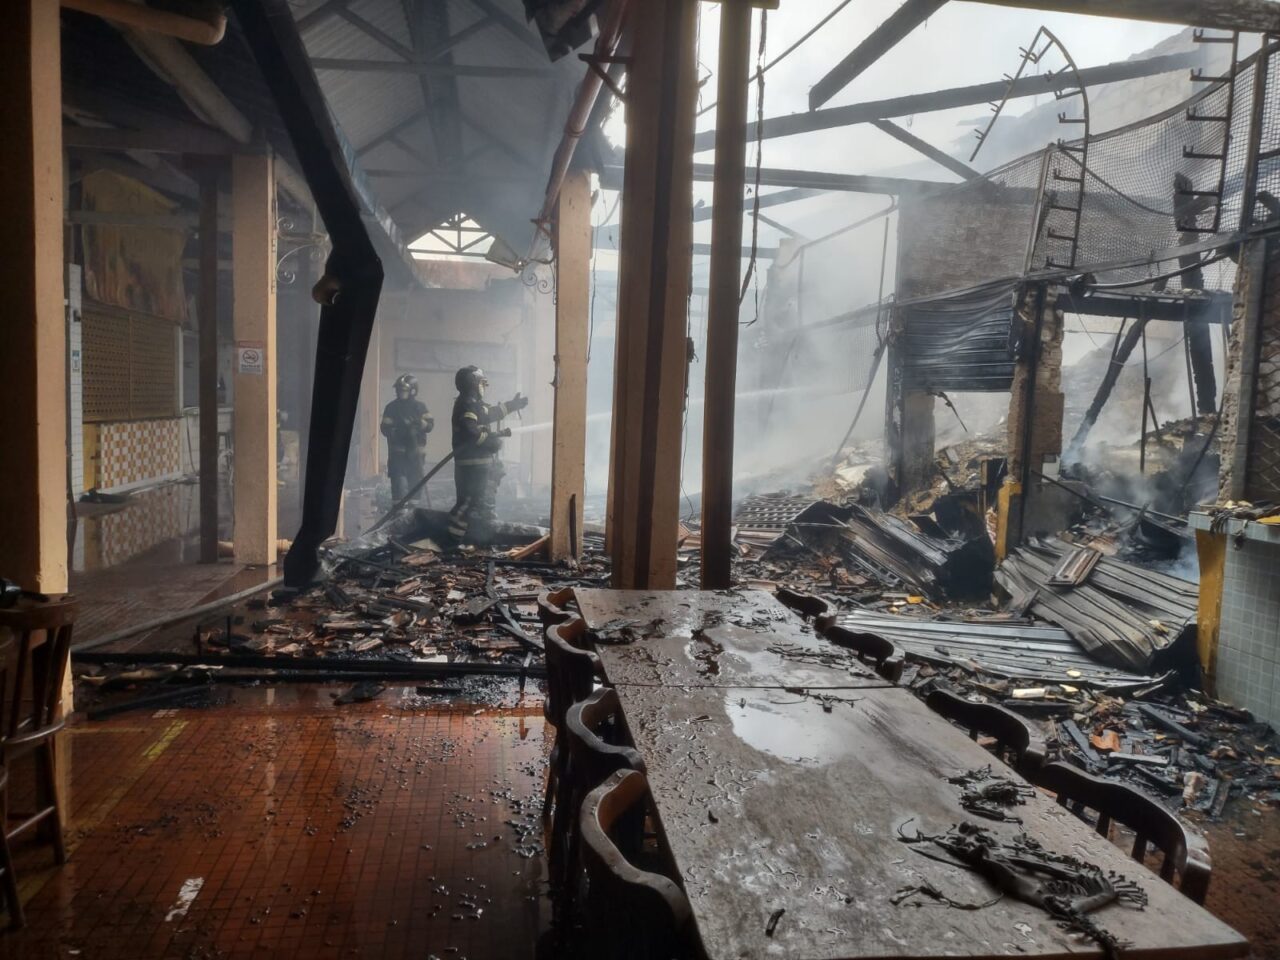 Extintores e hidrantes do Mercado da Encruzilhada não funcionaram, dizem comerciantes; incêndio destruiu parte do prédio